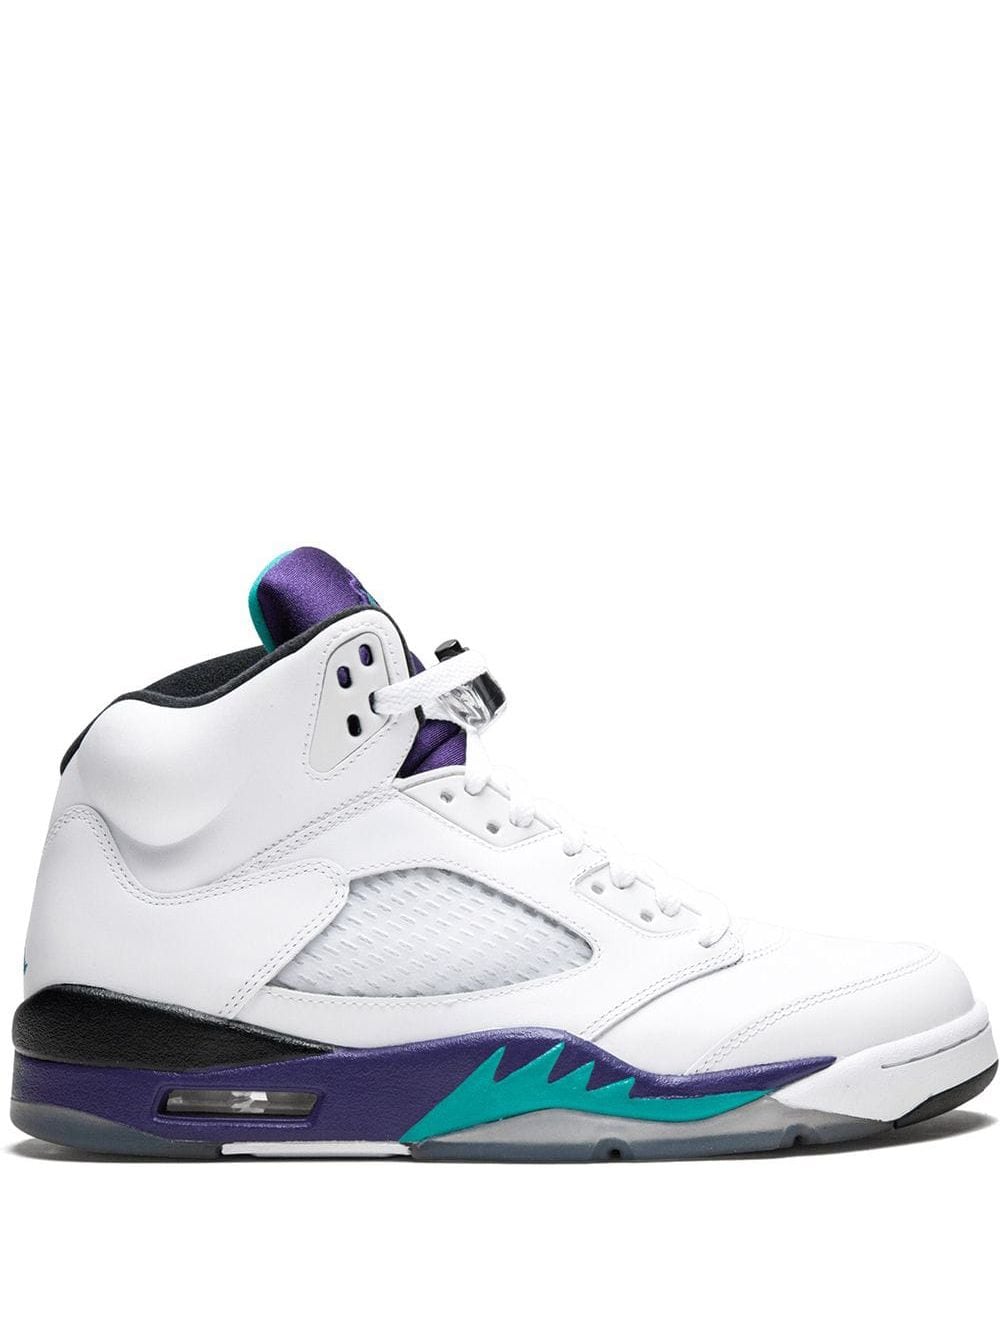 Image 1 of Jordan Air Jordan 5 Retro "Grape" sneakers